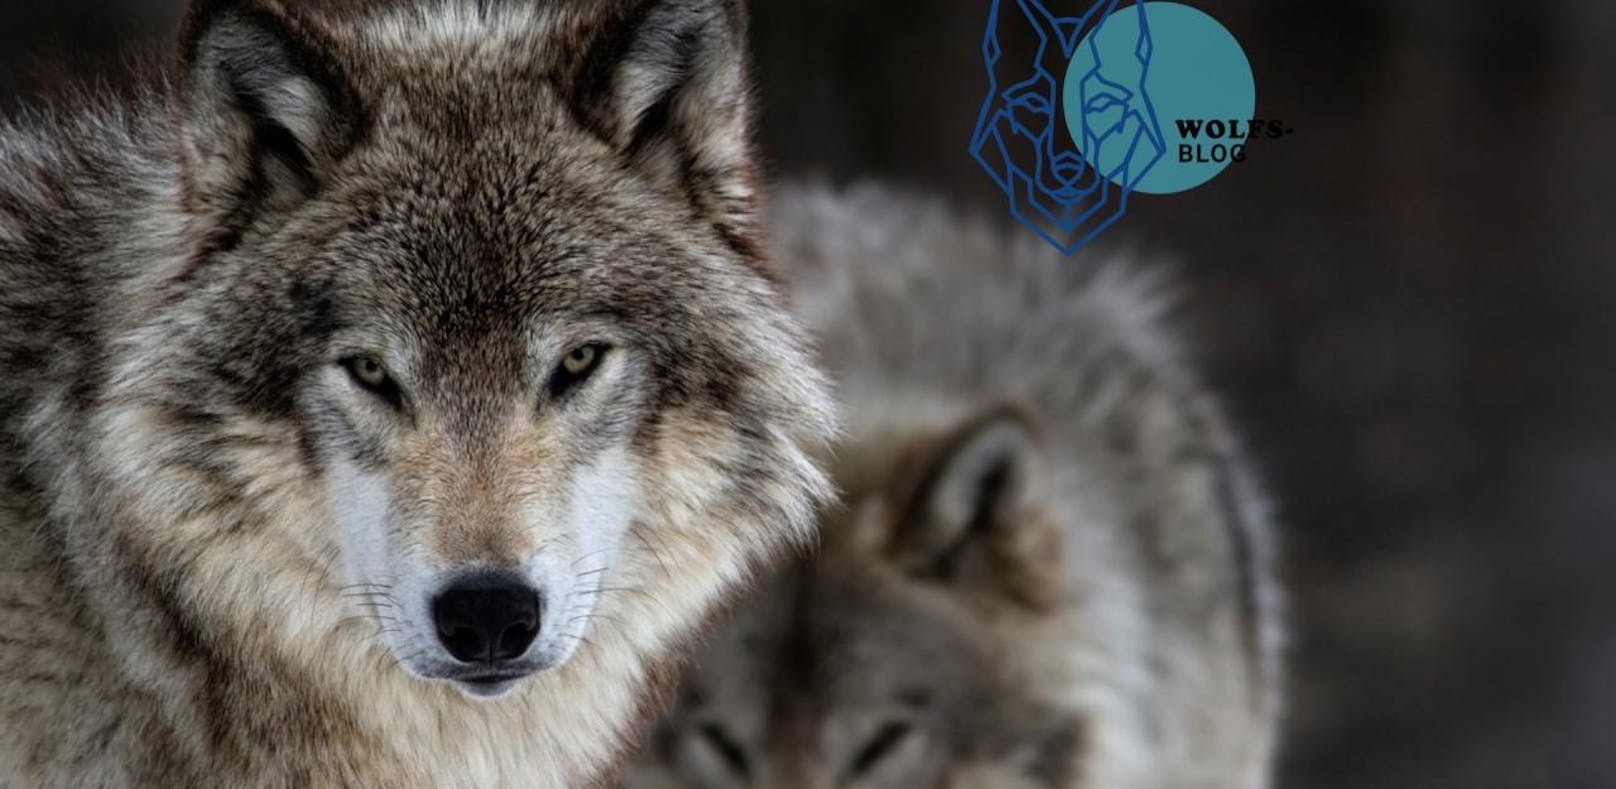 Sind Wölfe gefährlich? Der Fall "Kolmarden"